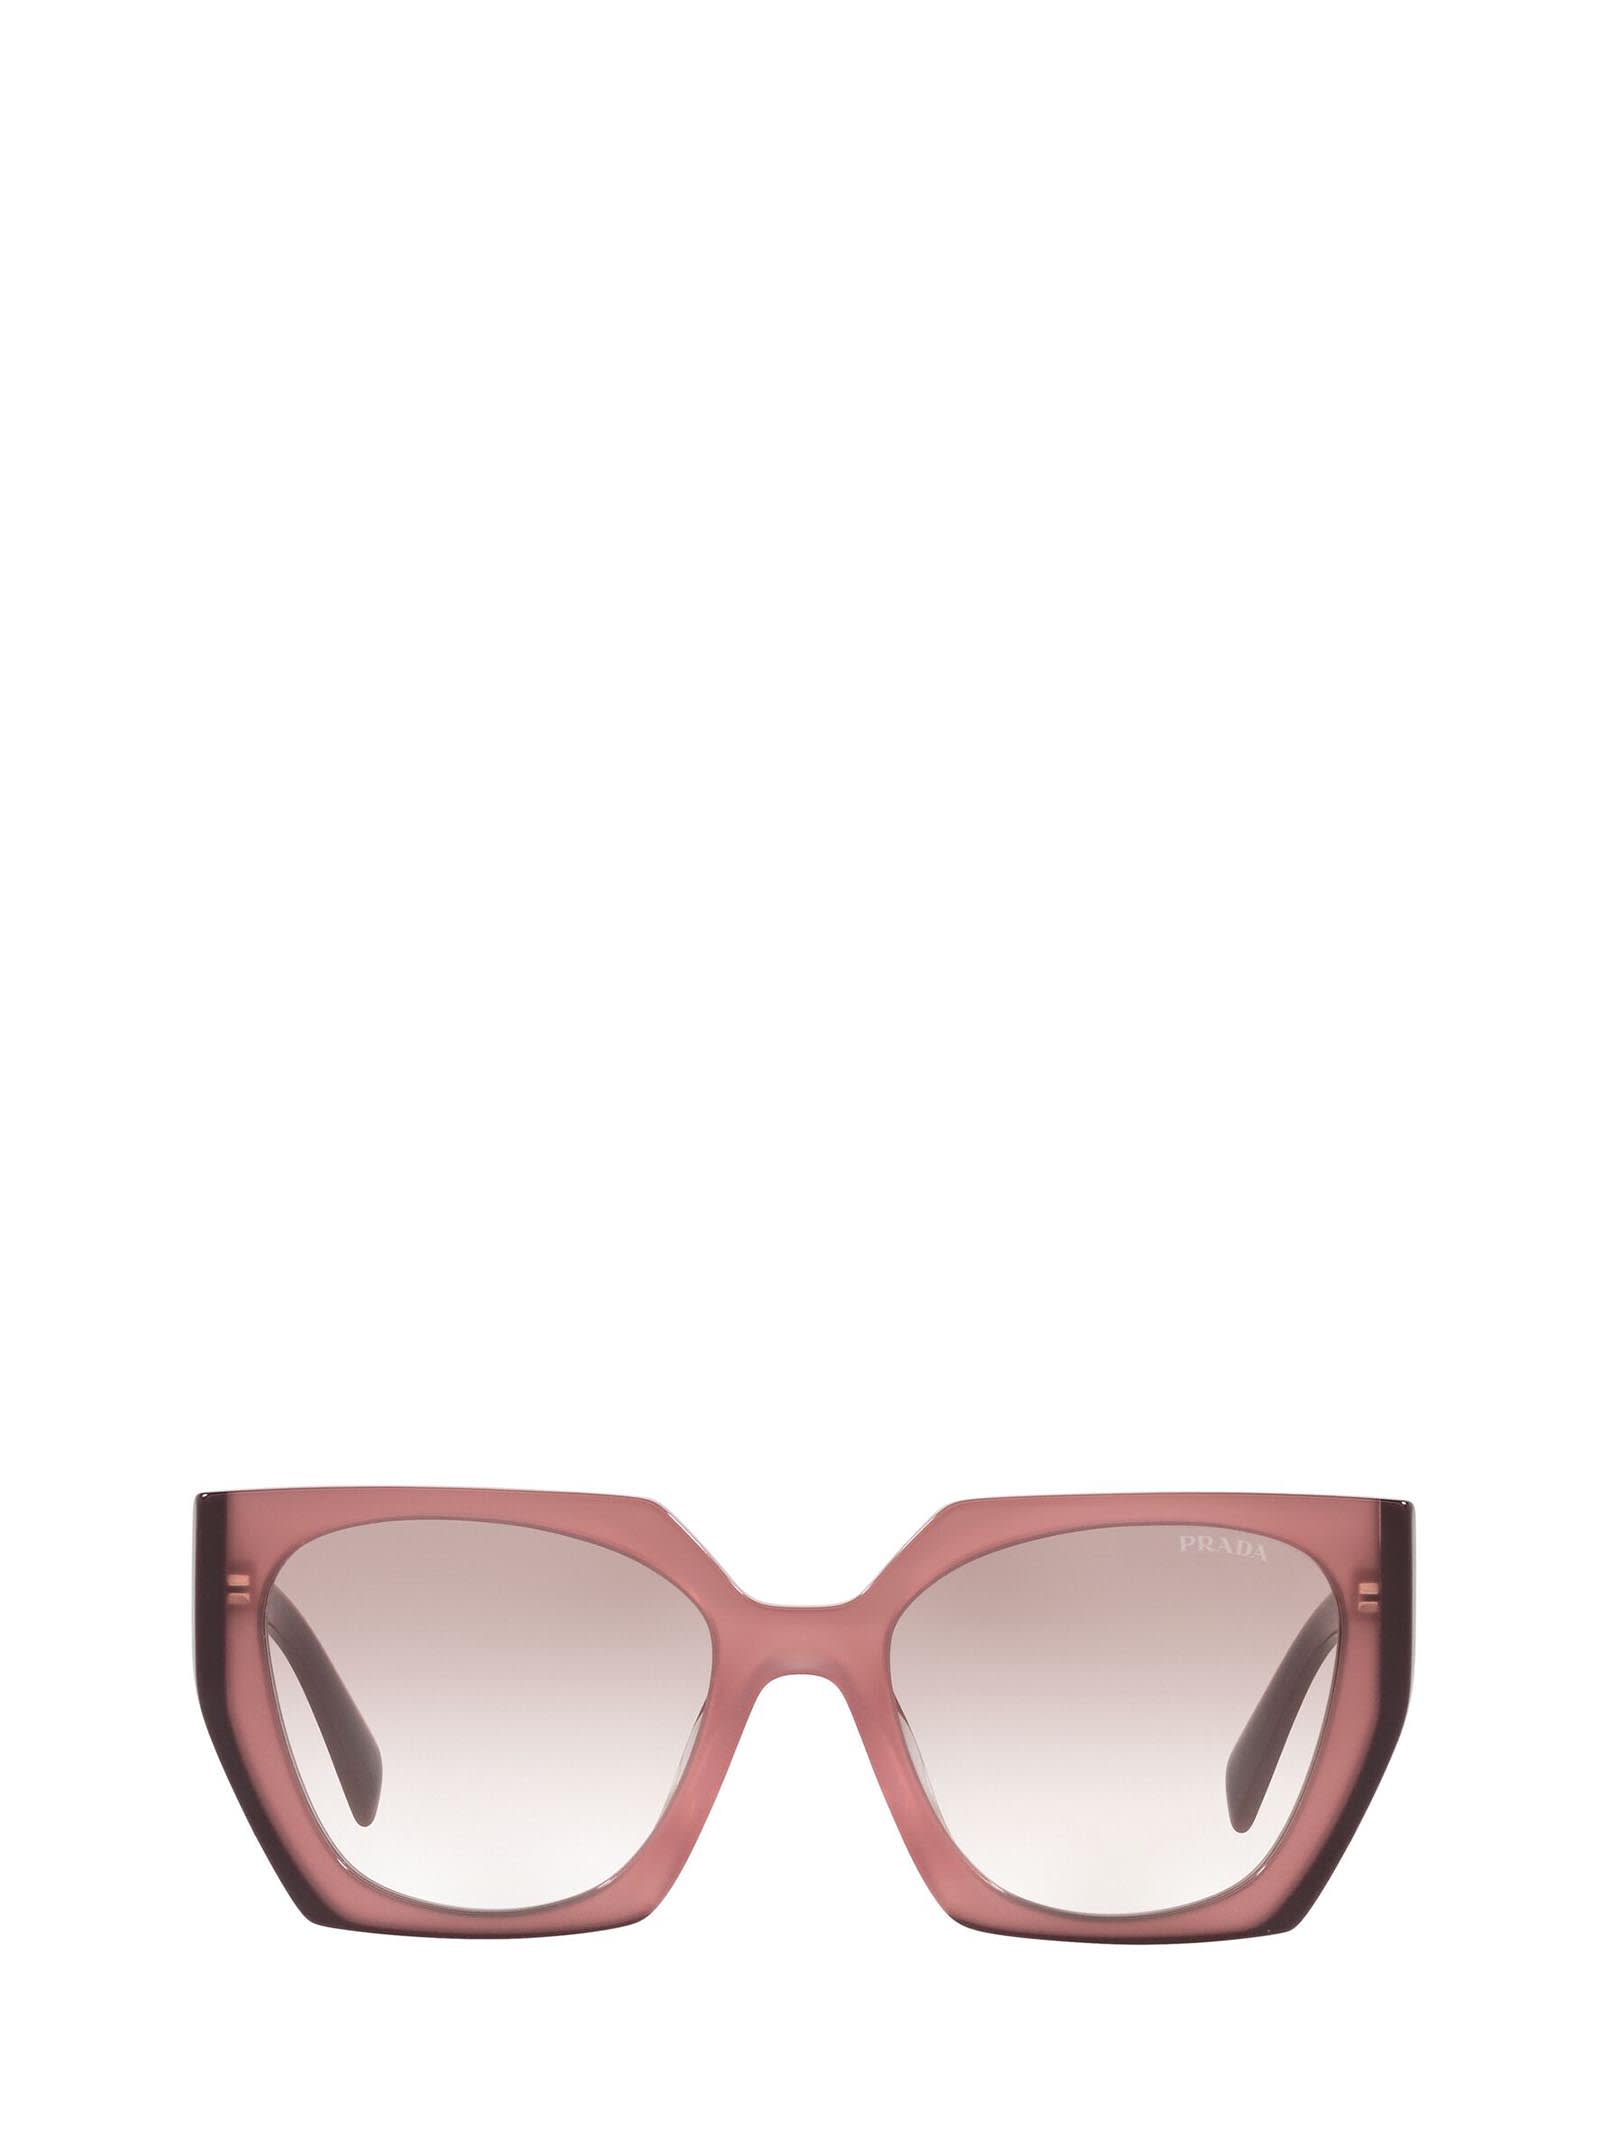 Prada Prada Pr 15ws Opal Garnet Sunglasses